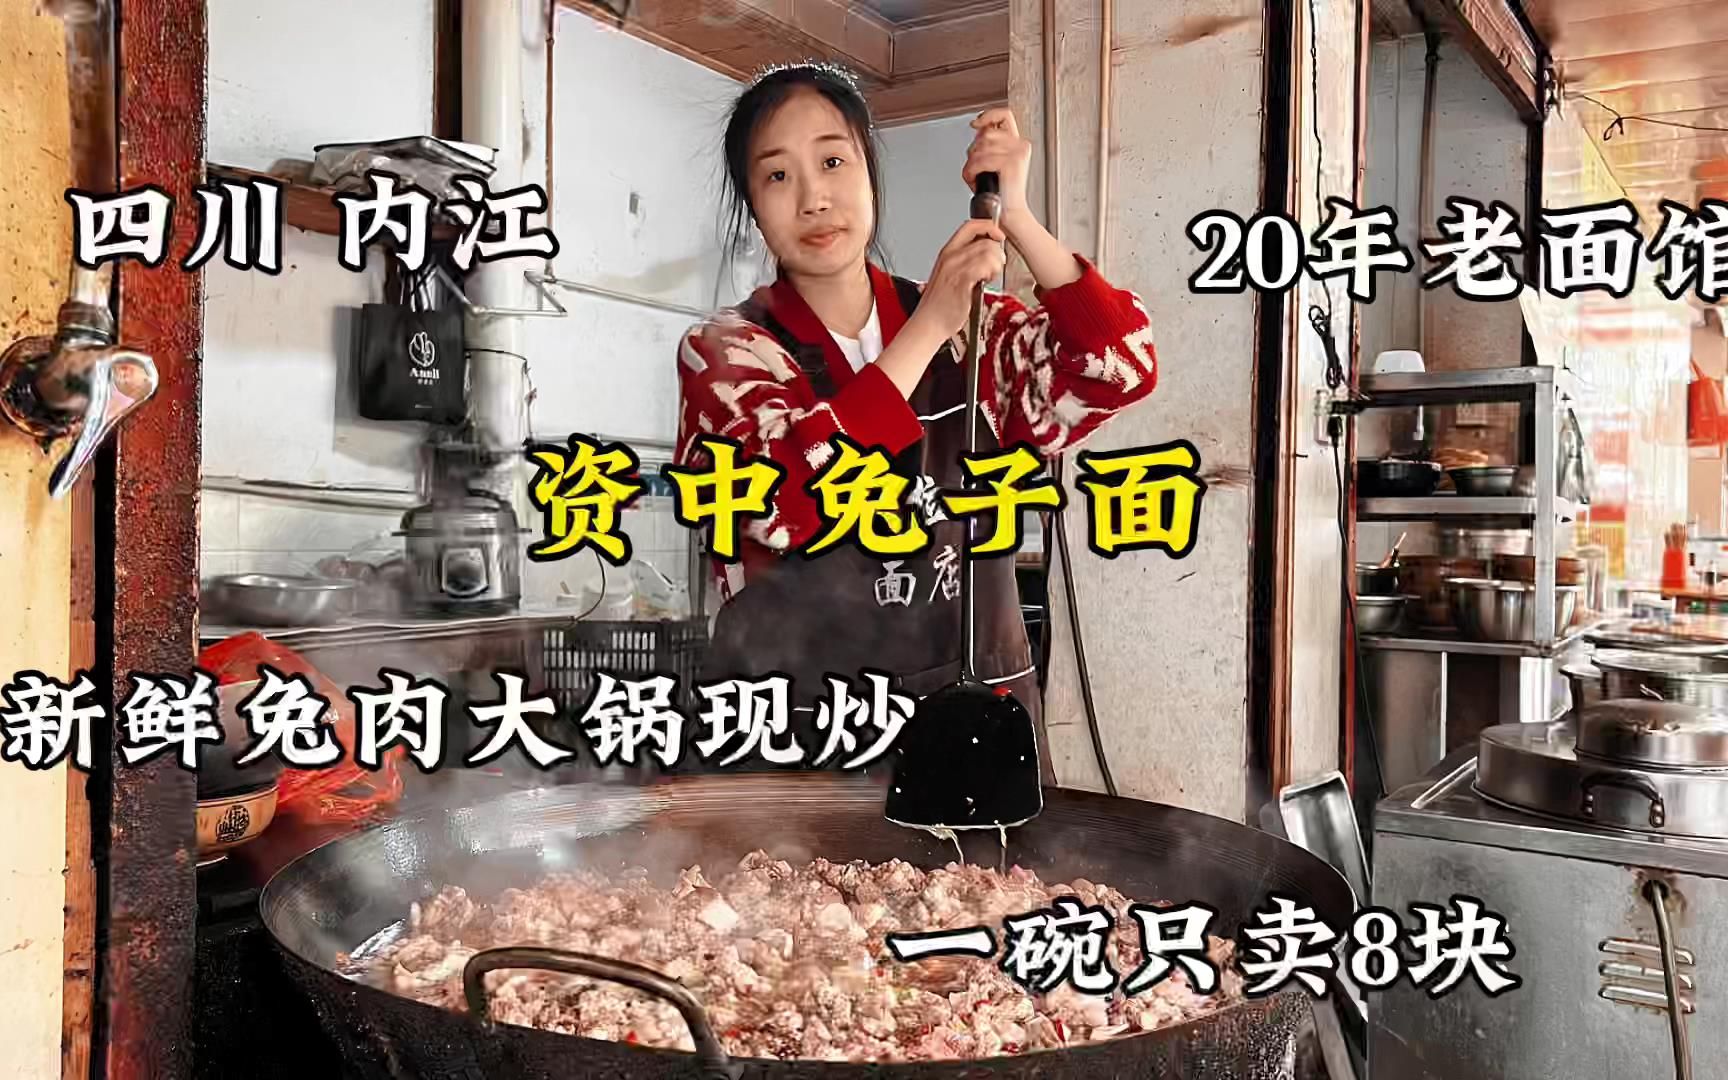 四川内江，资中县特色兔子面，新鲜兔肉大铁锅爆炒，一碗卖8块